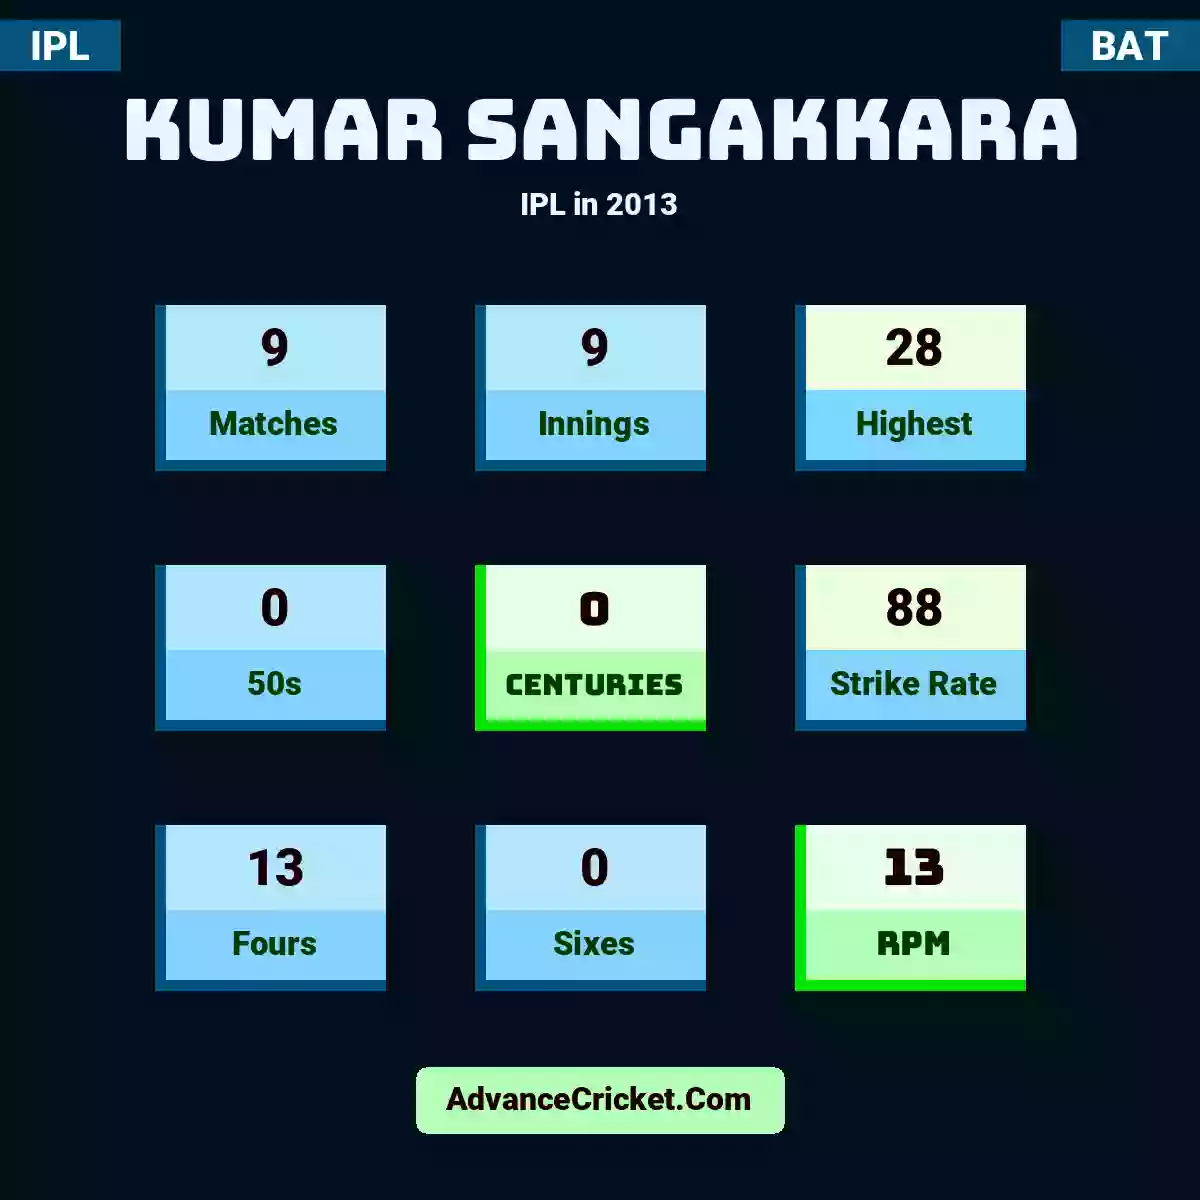 Kumar Sangakkara IPL  in 2013, Kumar Sangakkara played 9 matches, scored 28 runs as highest, 0 half-centuries, and 0 centuries, with a strike rate of 88. K.Sangakkara hit 13 fours and 0 sixes, with an RPM of 13.